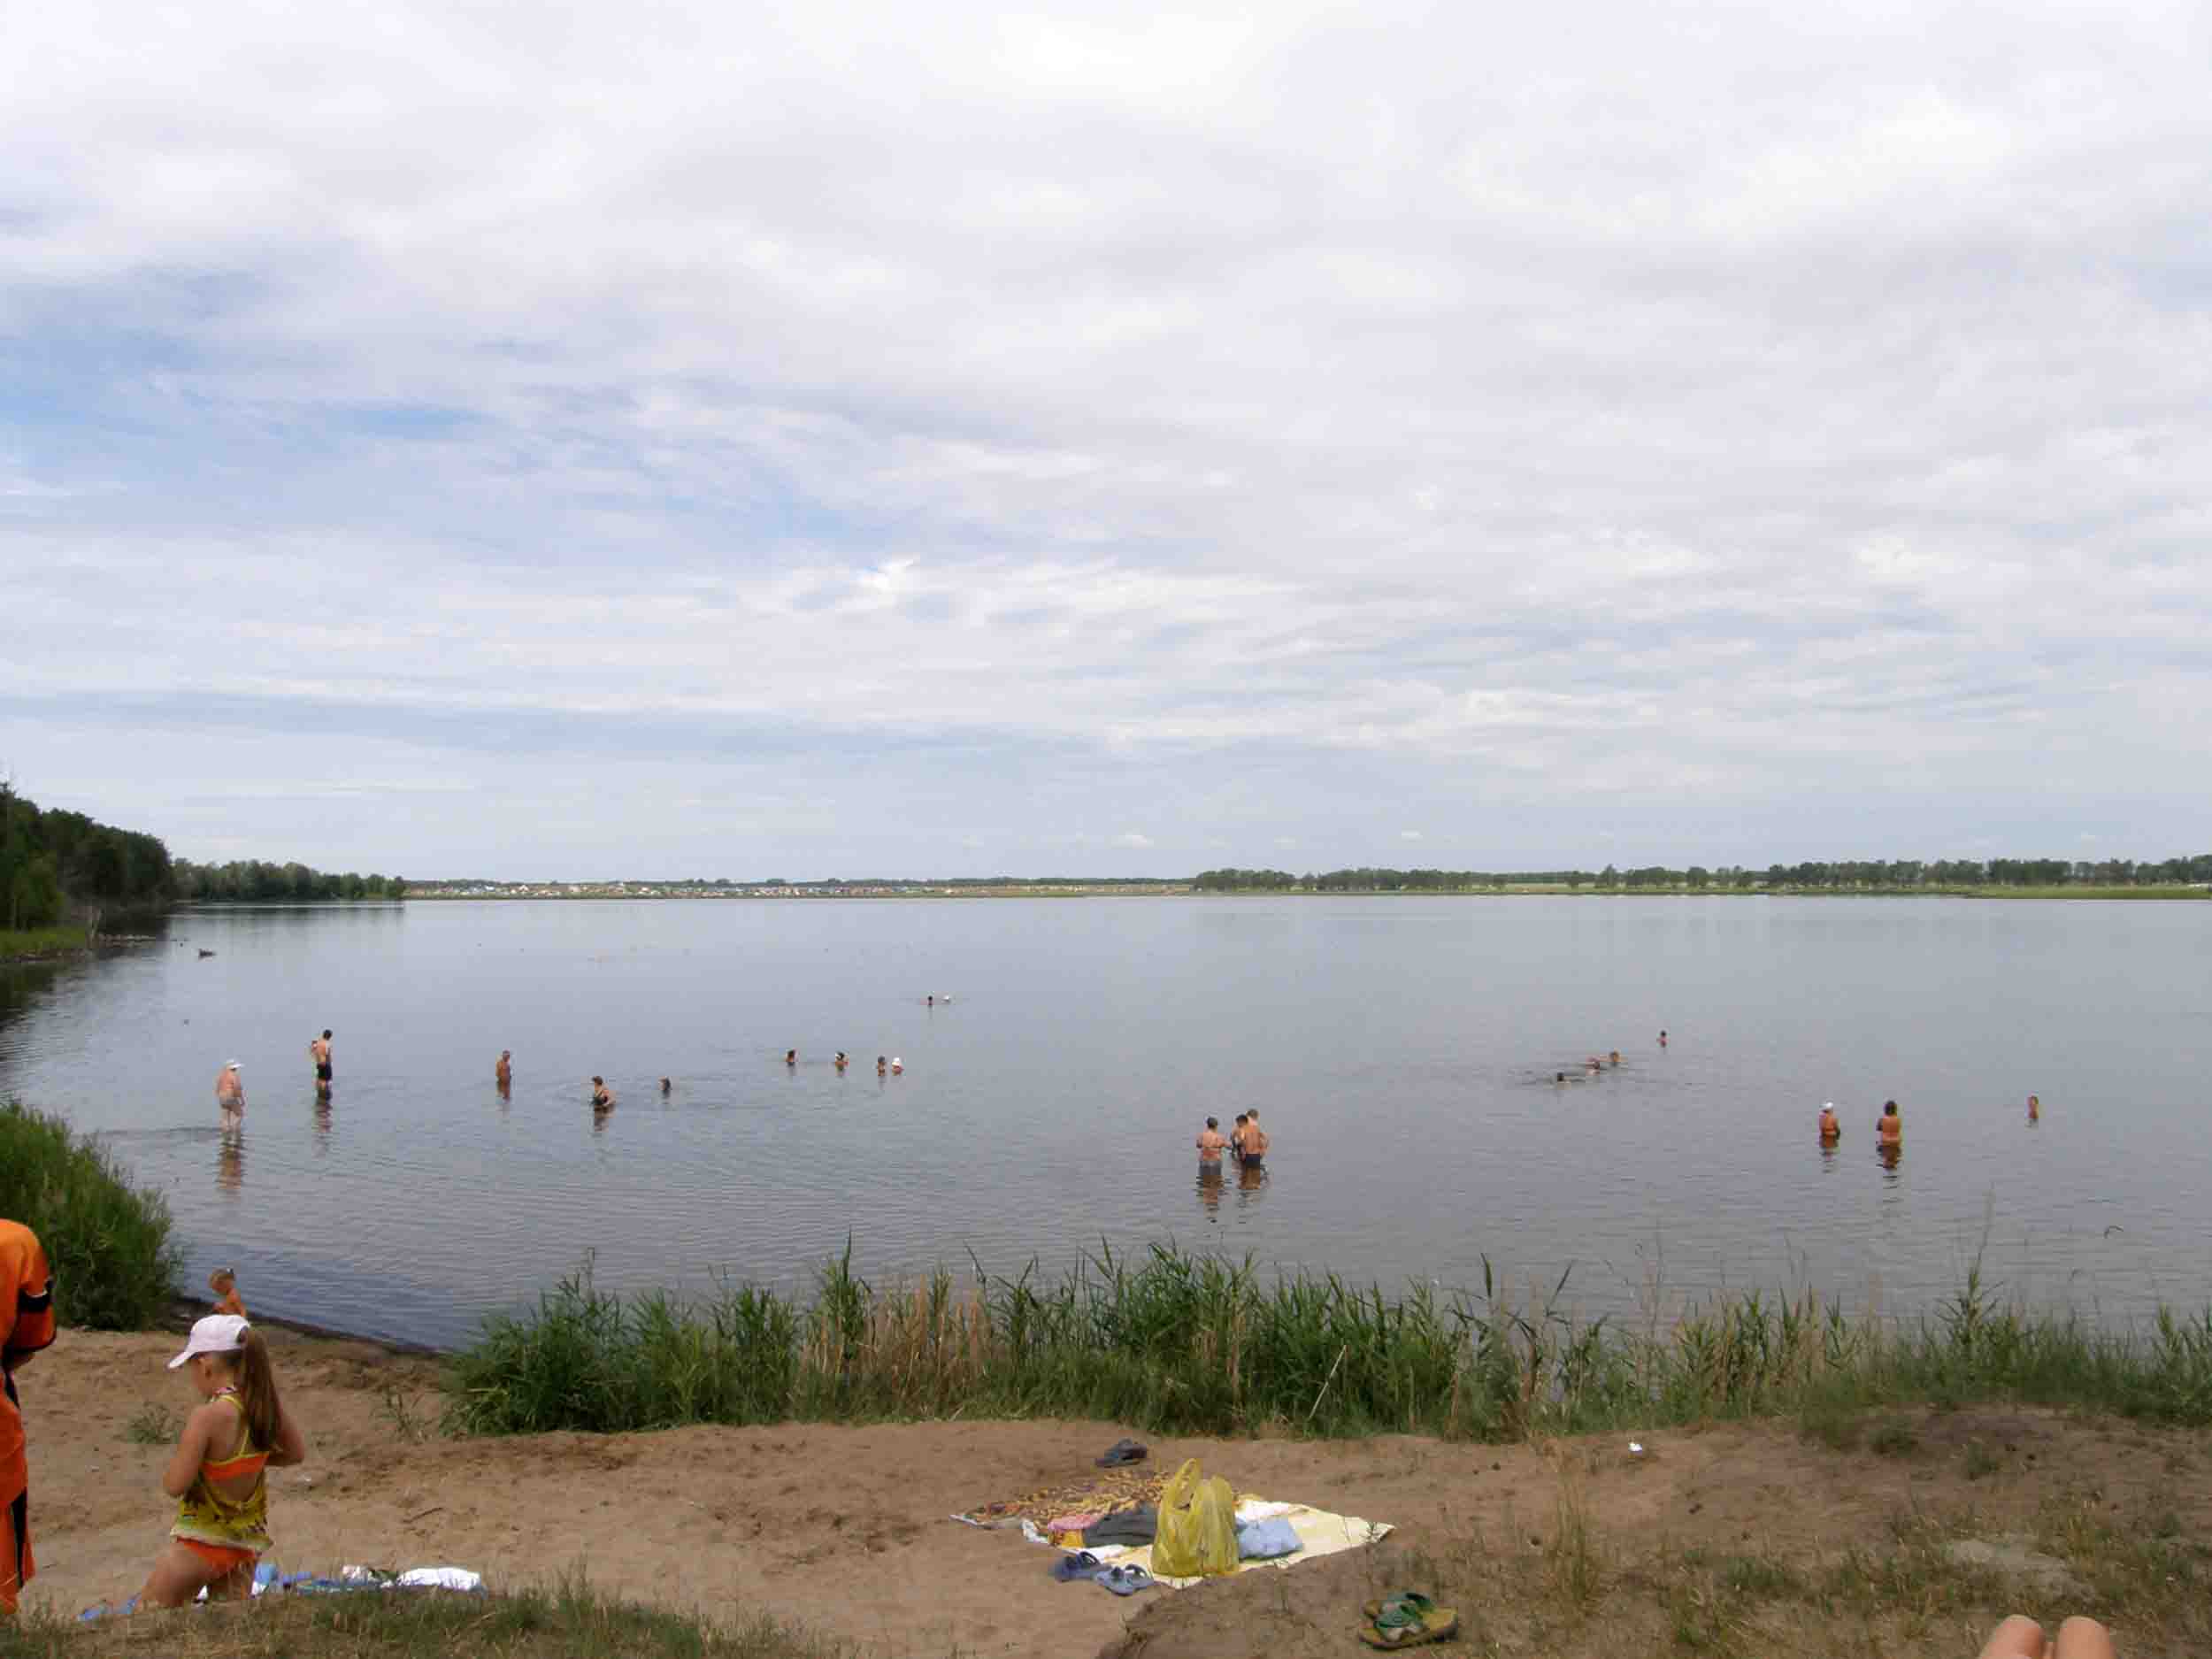 фото соленого озера в завьялово алтайский край